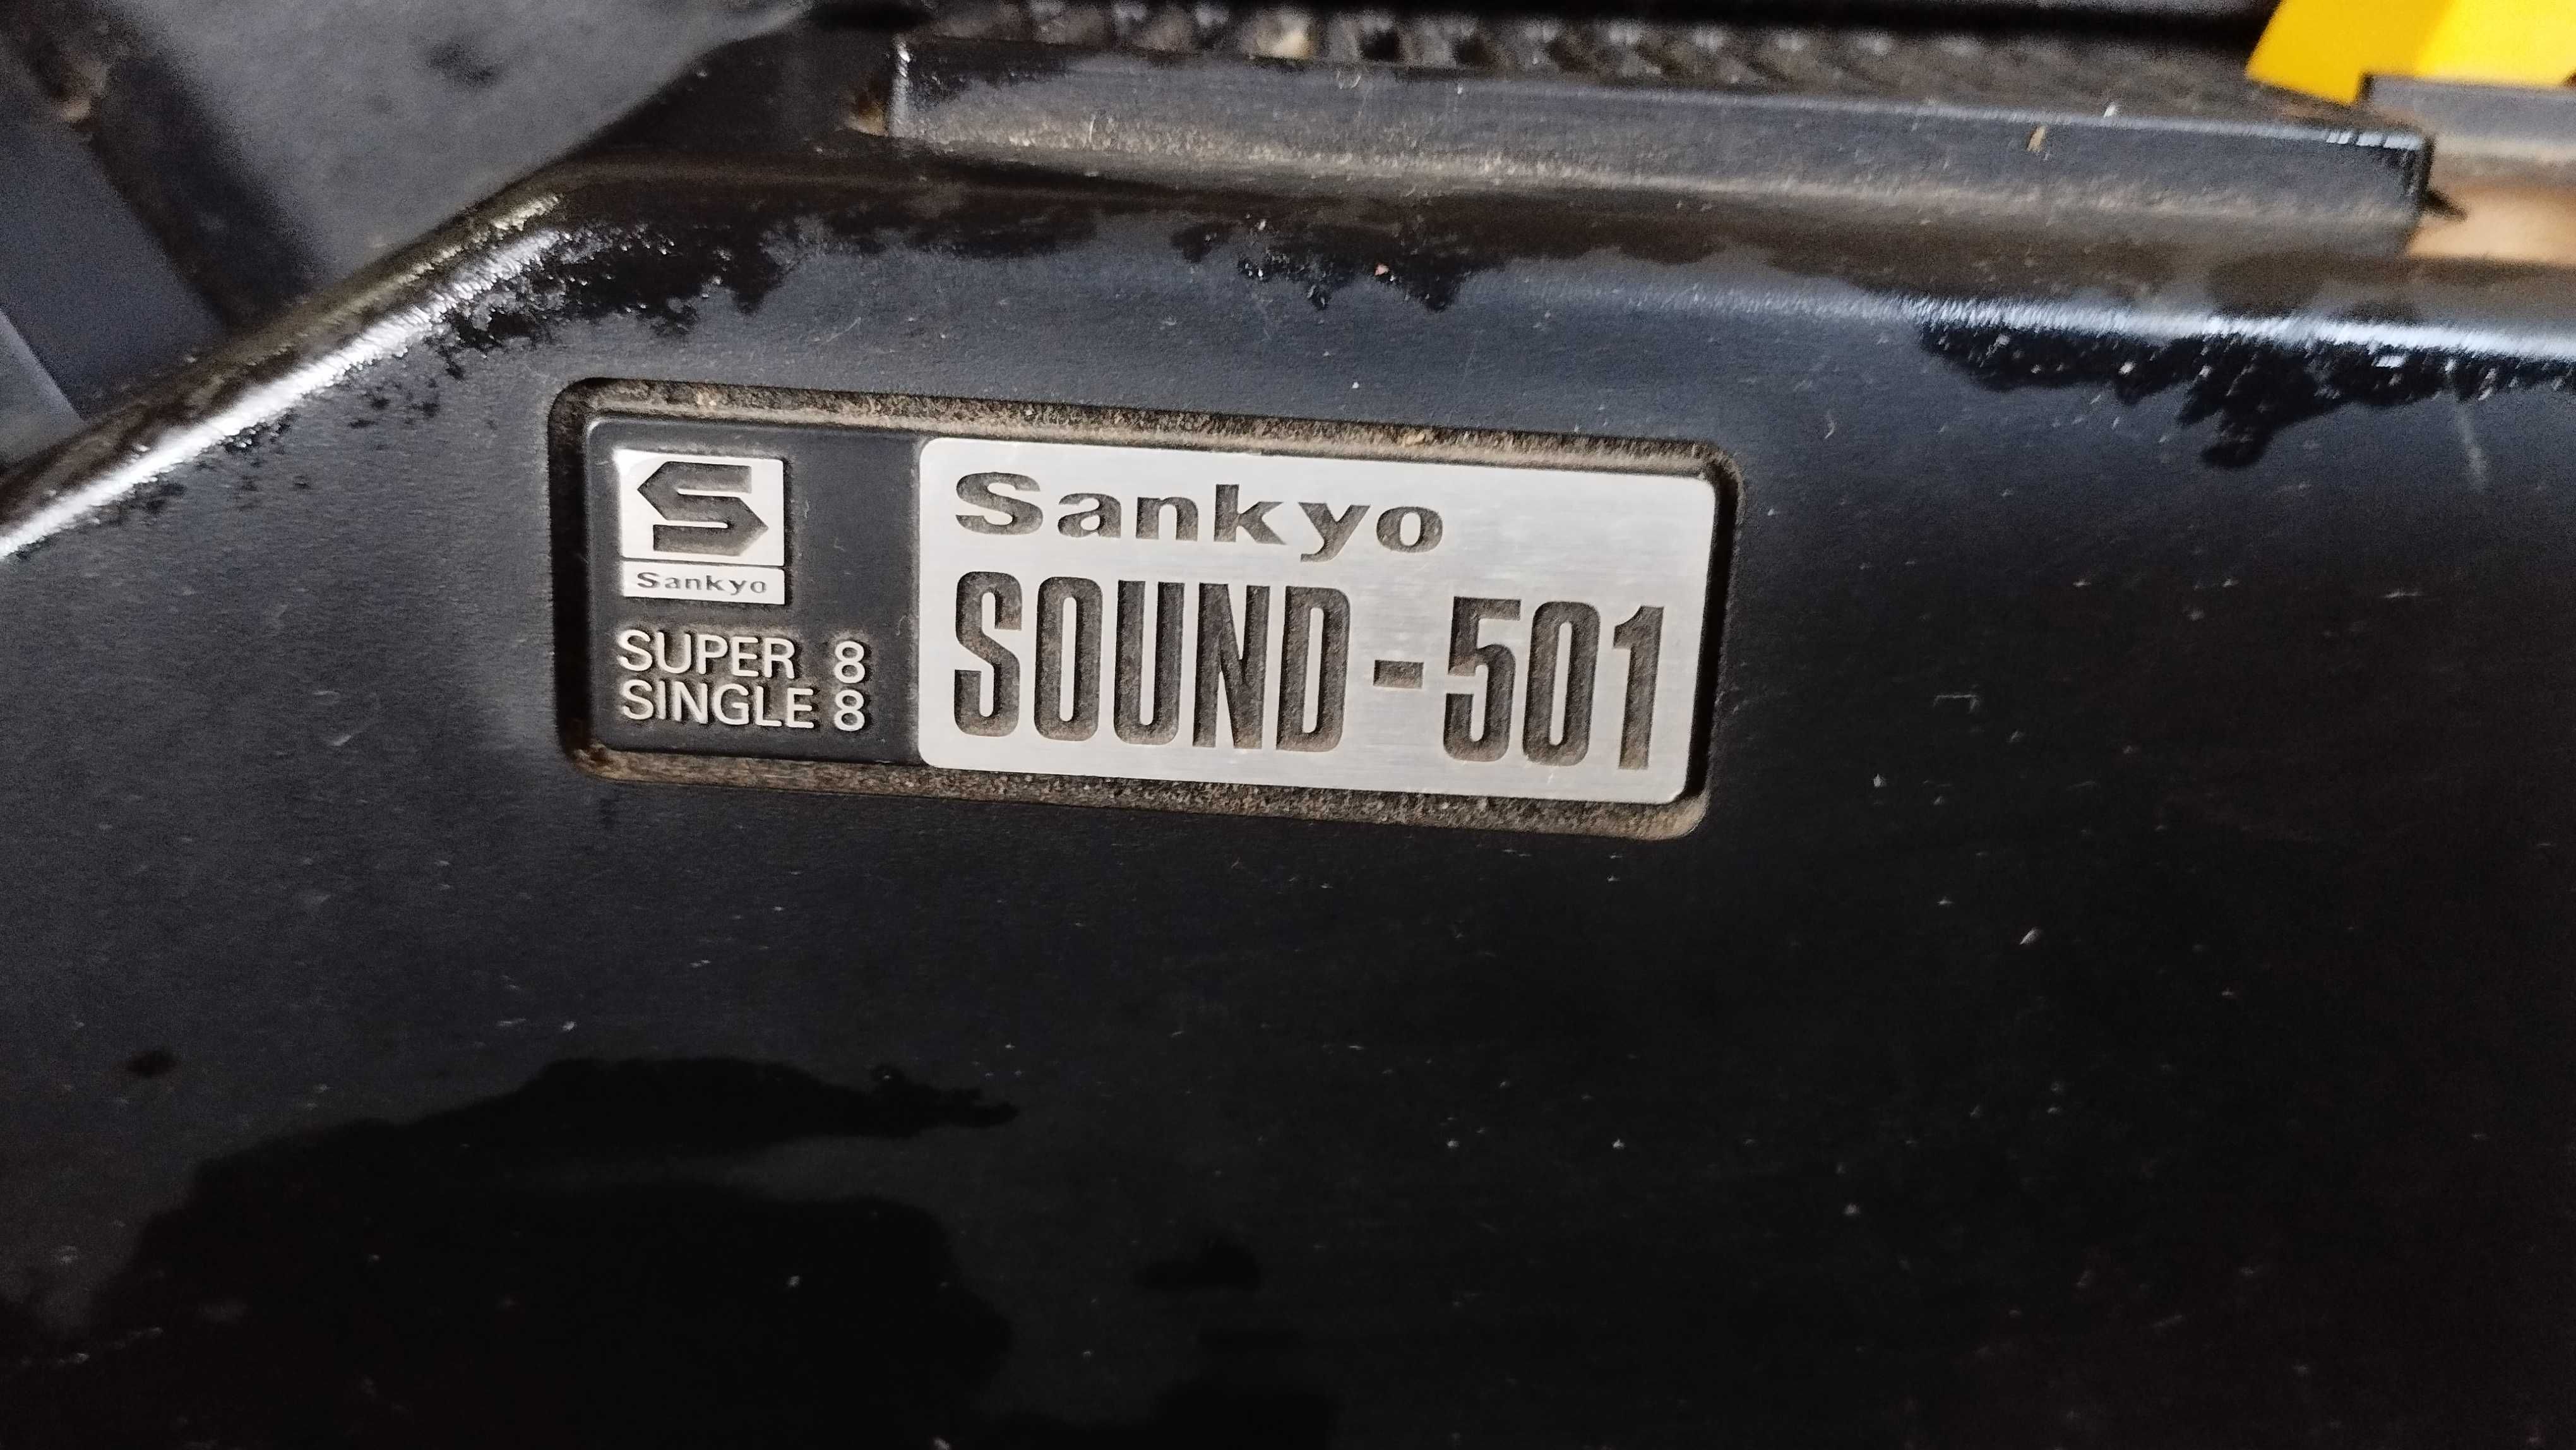 Projector sankyo sound-501 super 8